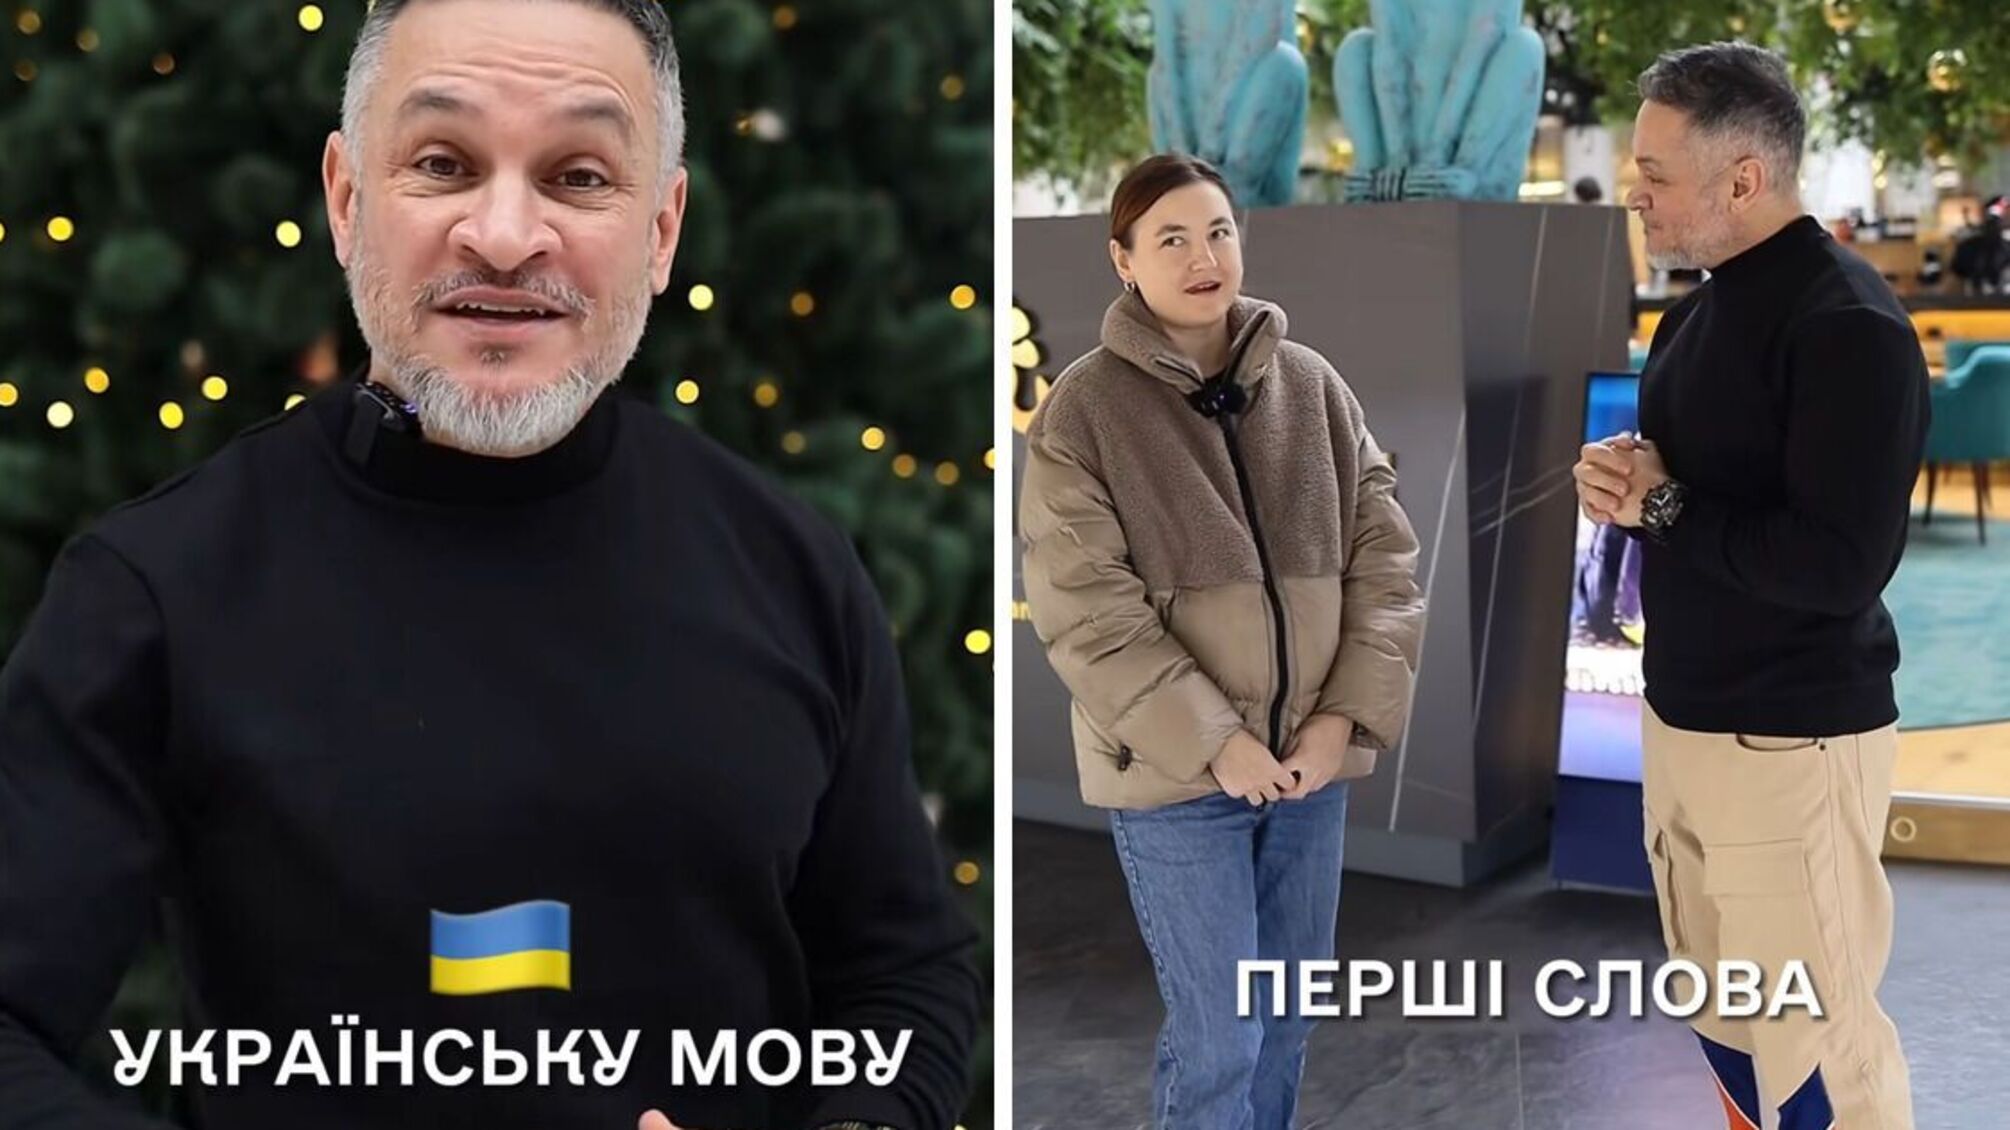 Спілкується з людьми у громадському місці: Ектор Хіменес-Браво показав, як вчить українську мову